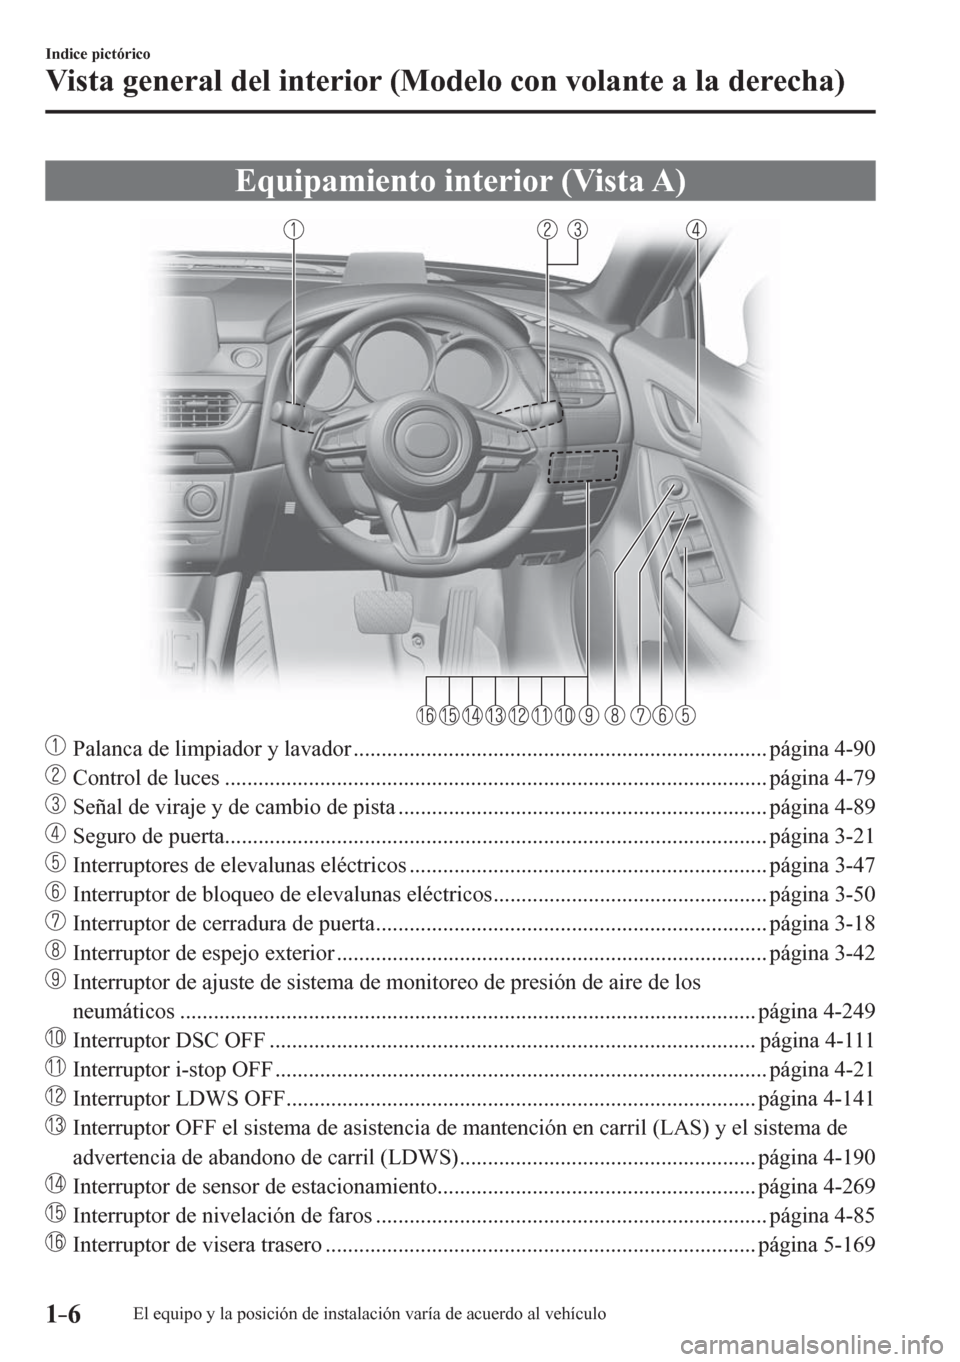 MAZDA MODEL 6 2016  Manual del propietario (in Spanish) 1–6
Indice pictórico
Vista general del interior (Modelo con volante a la derecha)
      E q u i p a m i e nto interior (Vista A)
     Palanca de limpiador y lavador ................................